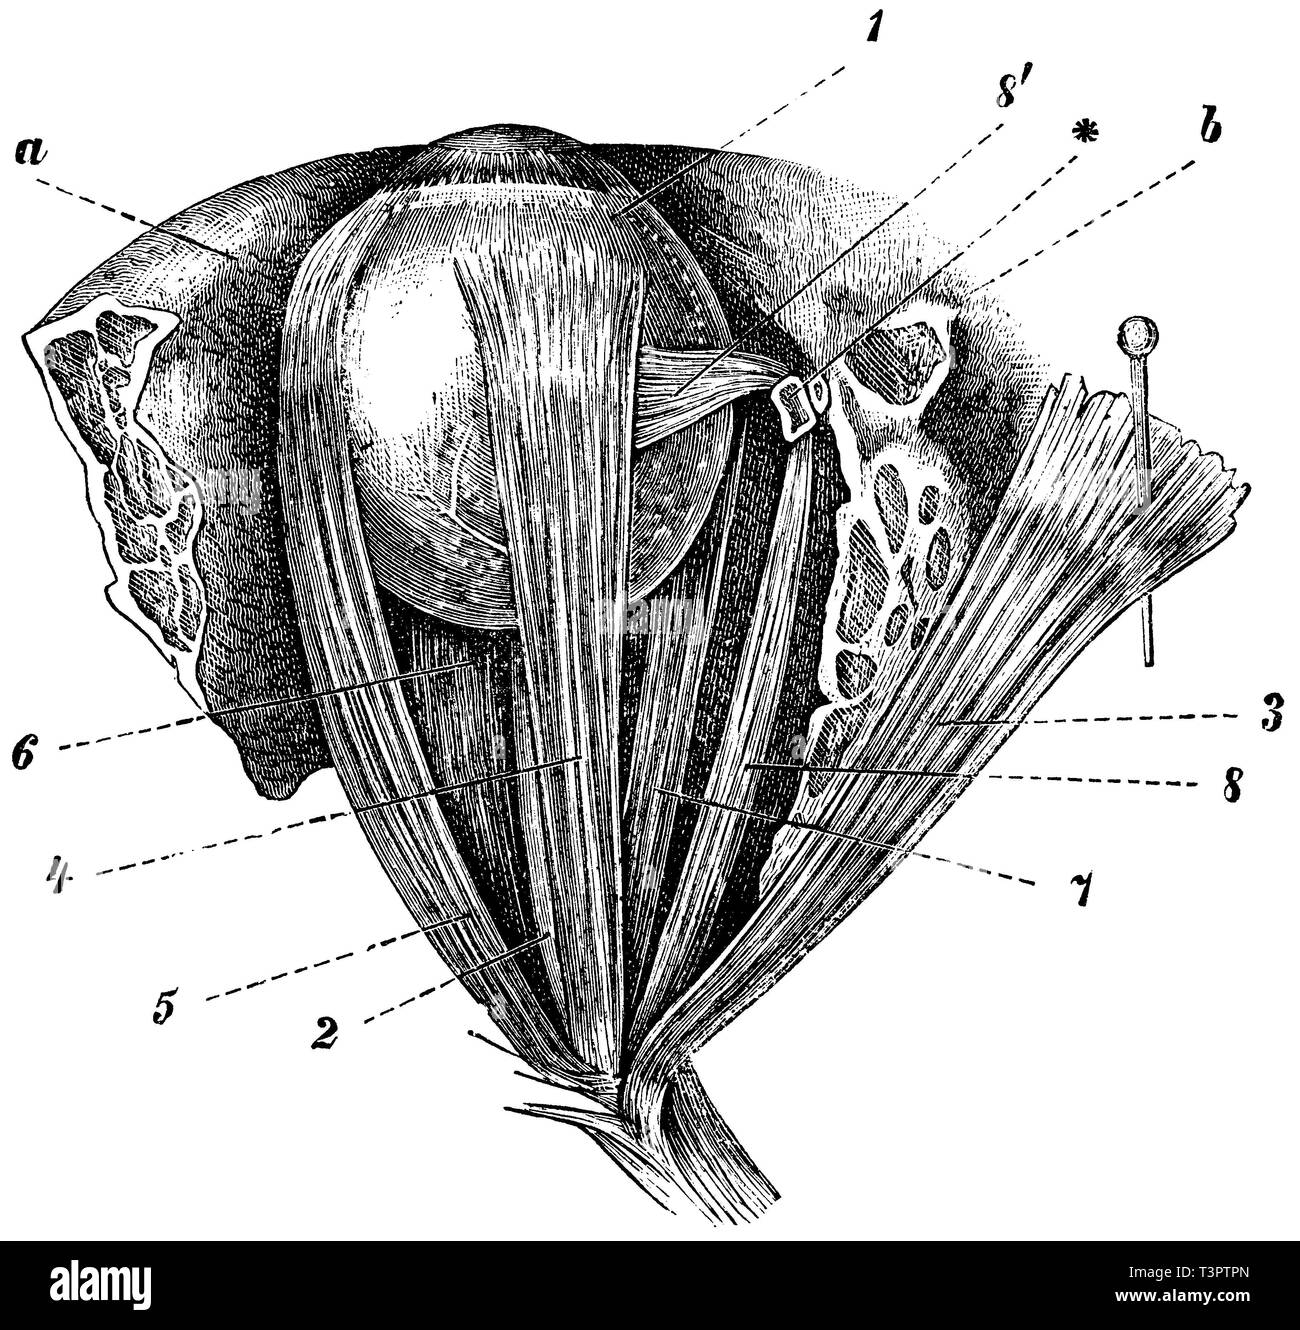 Umano: muscoli del bulbo oculare, a, b) le ossa, 1) Eyeball, 2) del nervo ottico, 3) Coperchio rimosso e spinto a lato, 4) rettilineo superiore muscolo oculare, 5) esterna del muscolo oculare, 6) inferiore del muscolo oculare, 7) interna del muscolo oculare, 8) superiore ardesia muscolo oculare, 8 ') tendini del muscolo oculare, * Ruolo del muscolo oculare, anonym 1887 Foto Stock